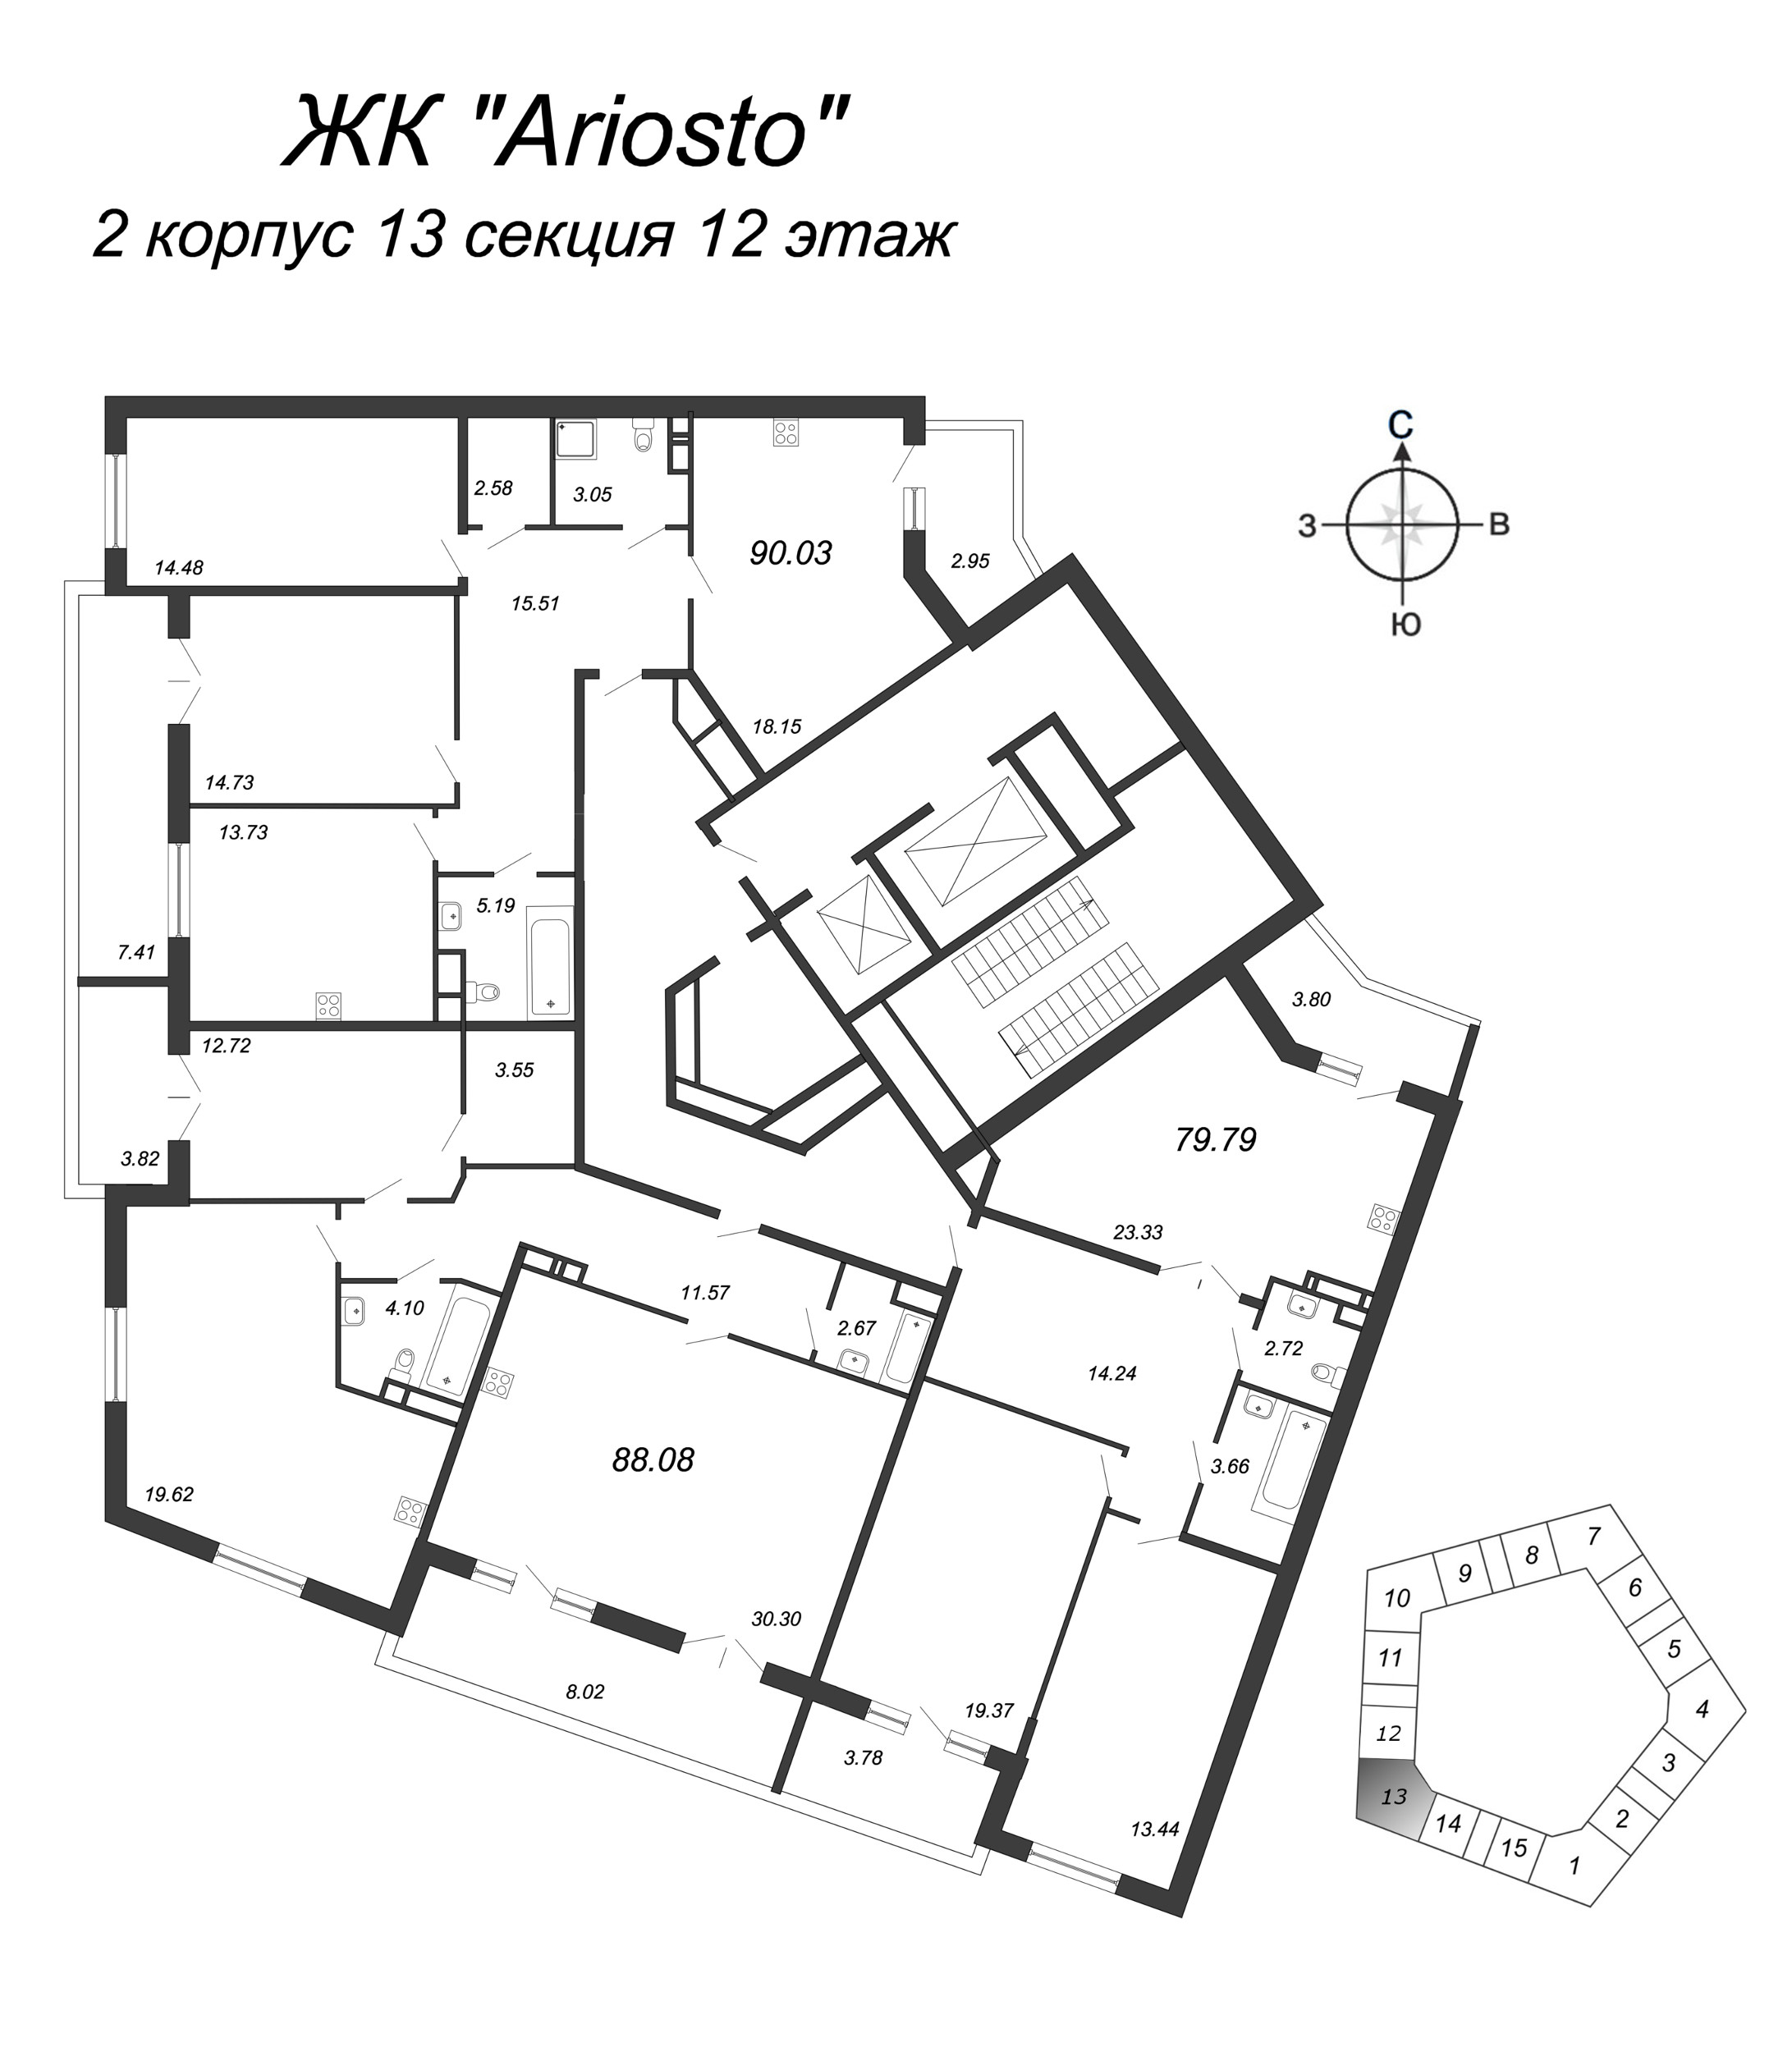 3-комнатная квартира, 90.03 м² в ЖК "Ariosto" - планировка этажа